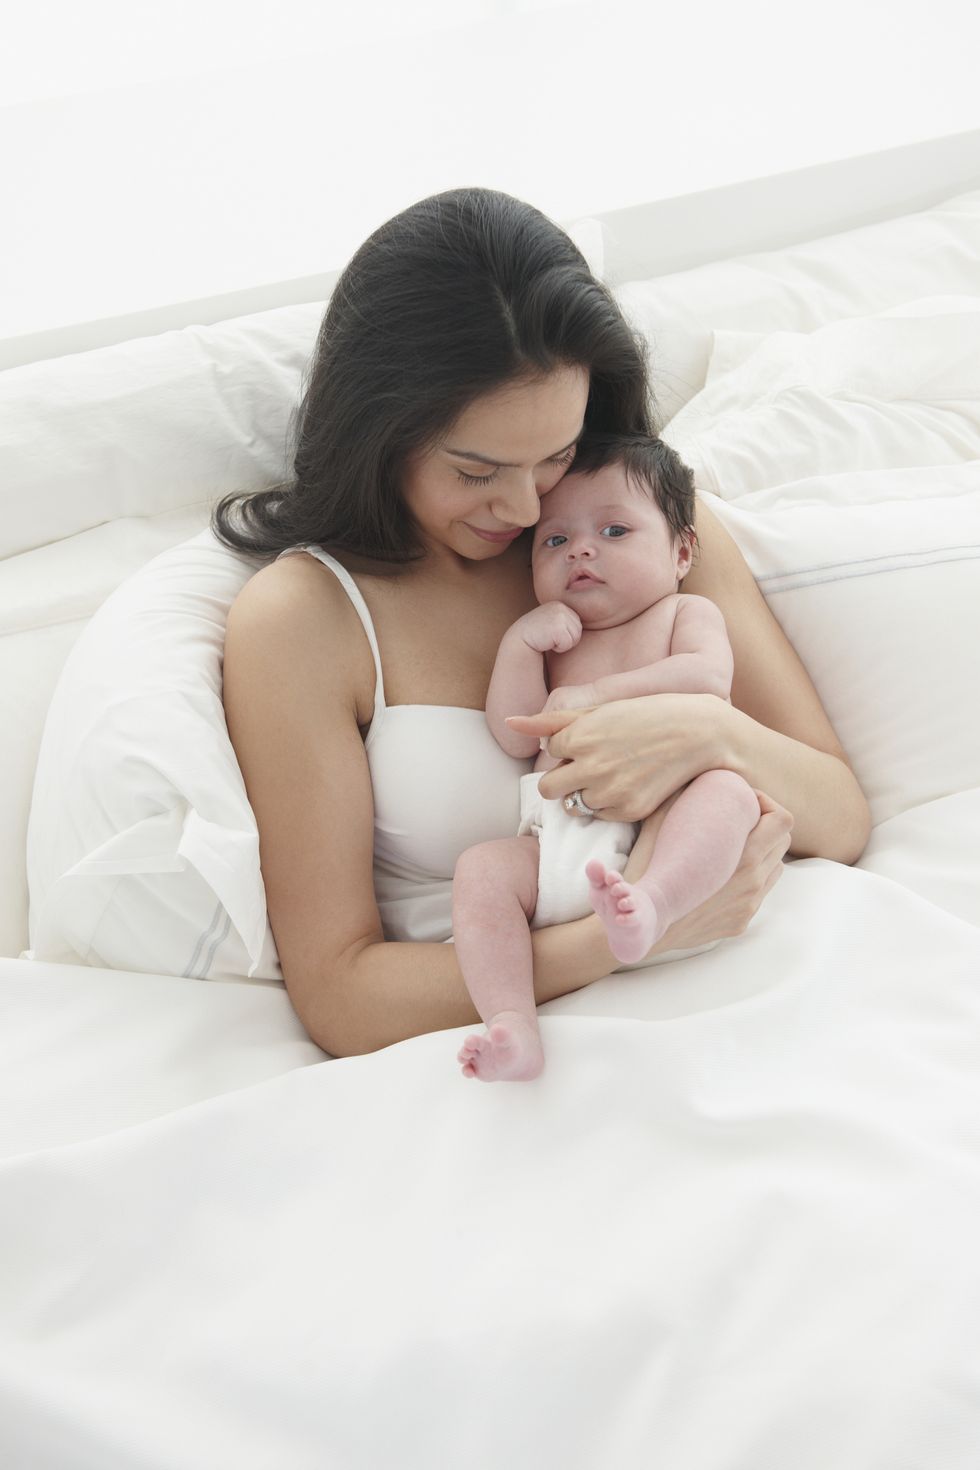 una madre incorpora a su bebeé cogiéndole en la cama para intentar aliviarle el hipo, que es uno de los ruidos raros que hacen los bebés